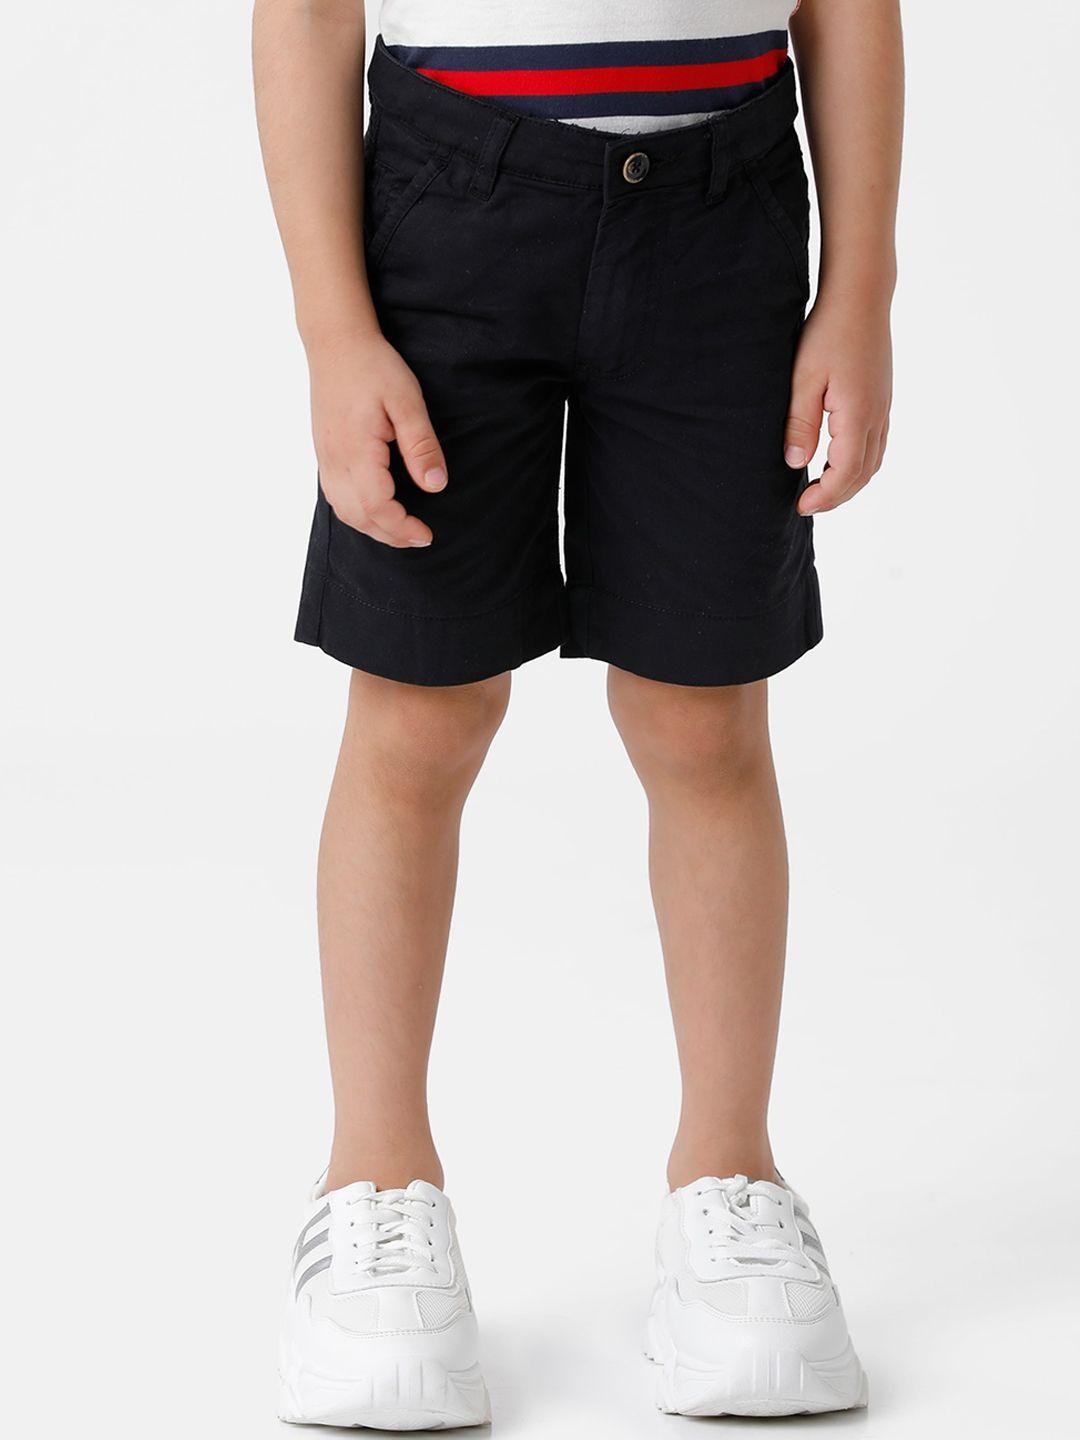 kate & oscar boys black shorts